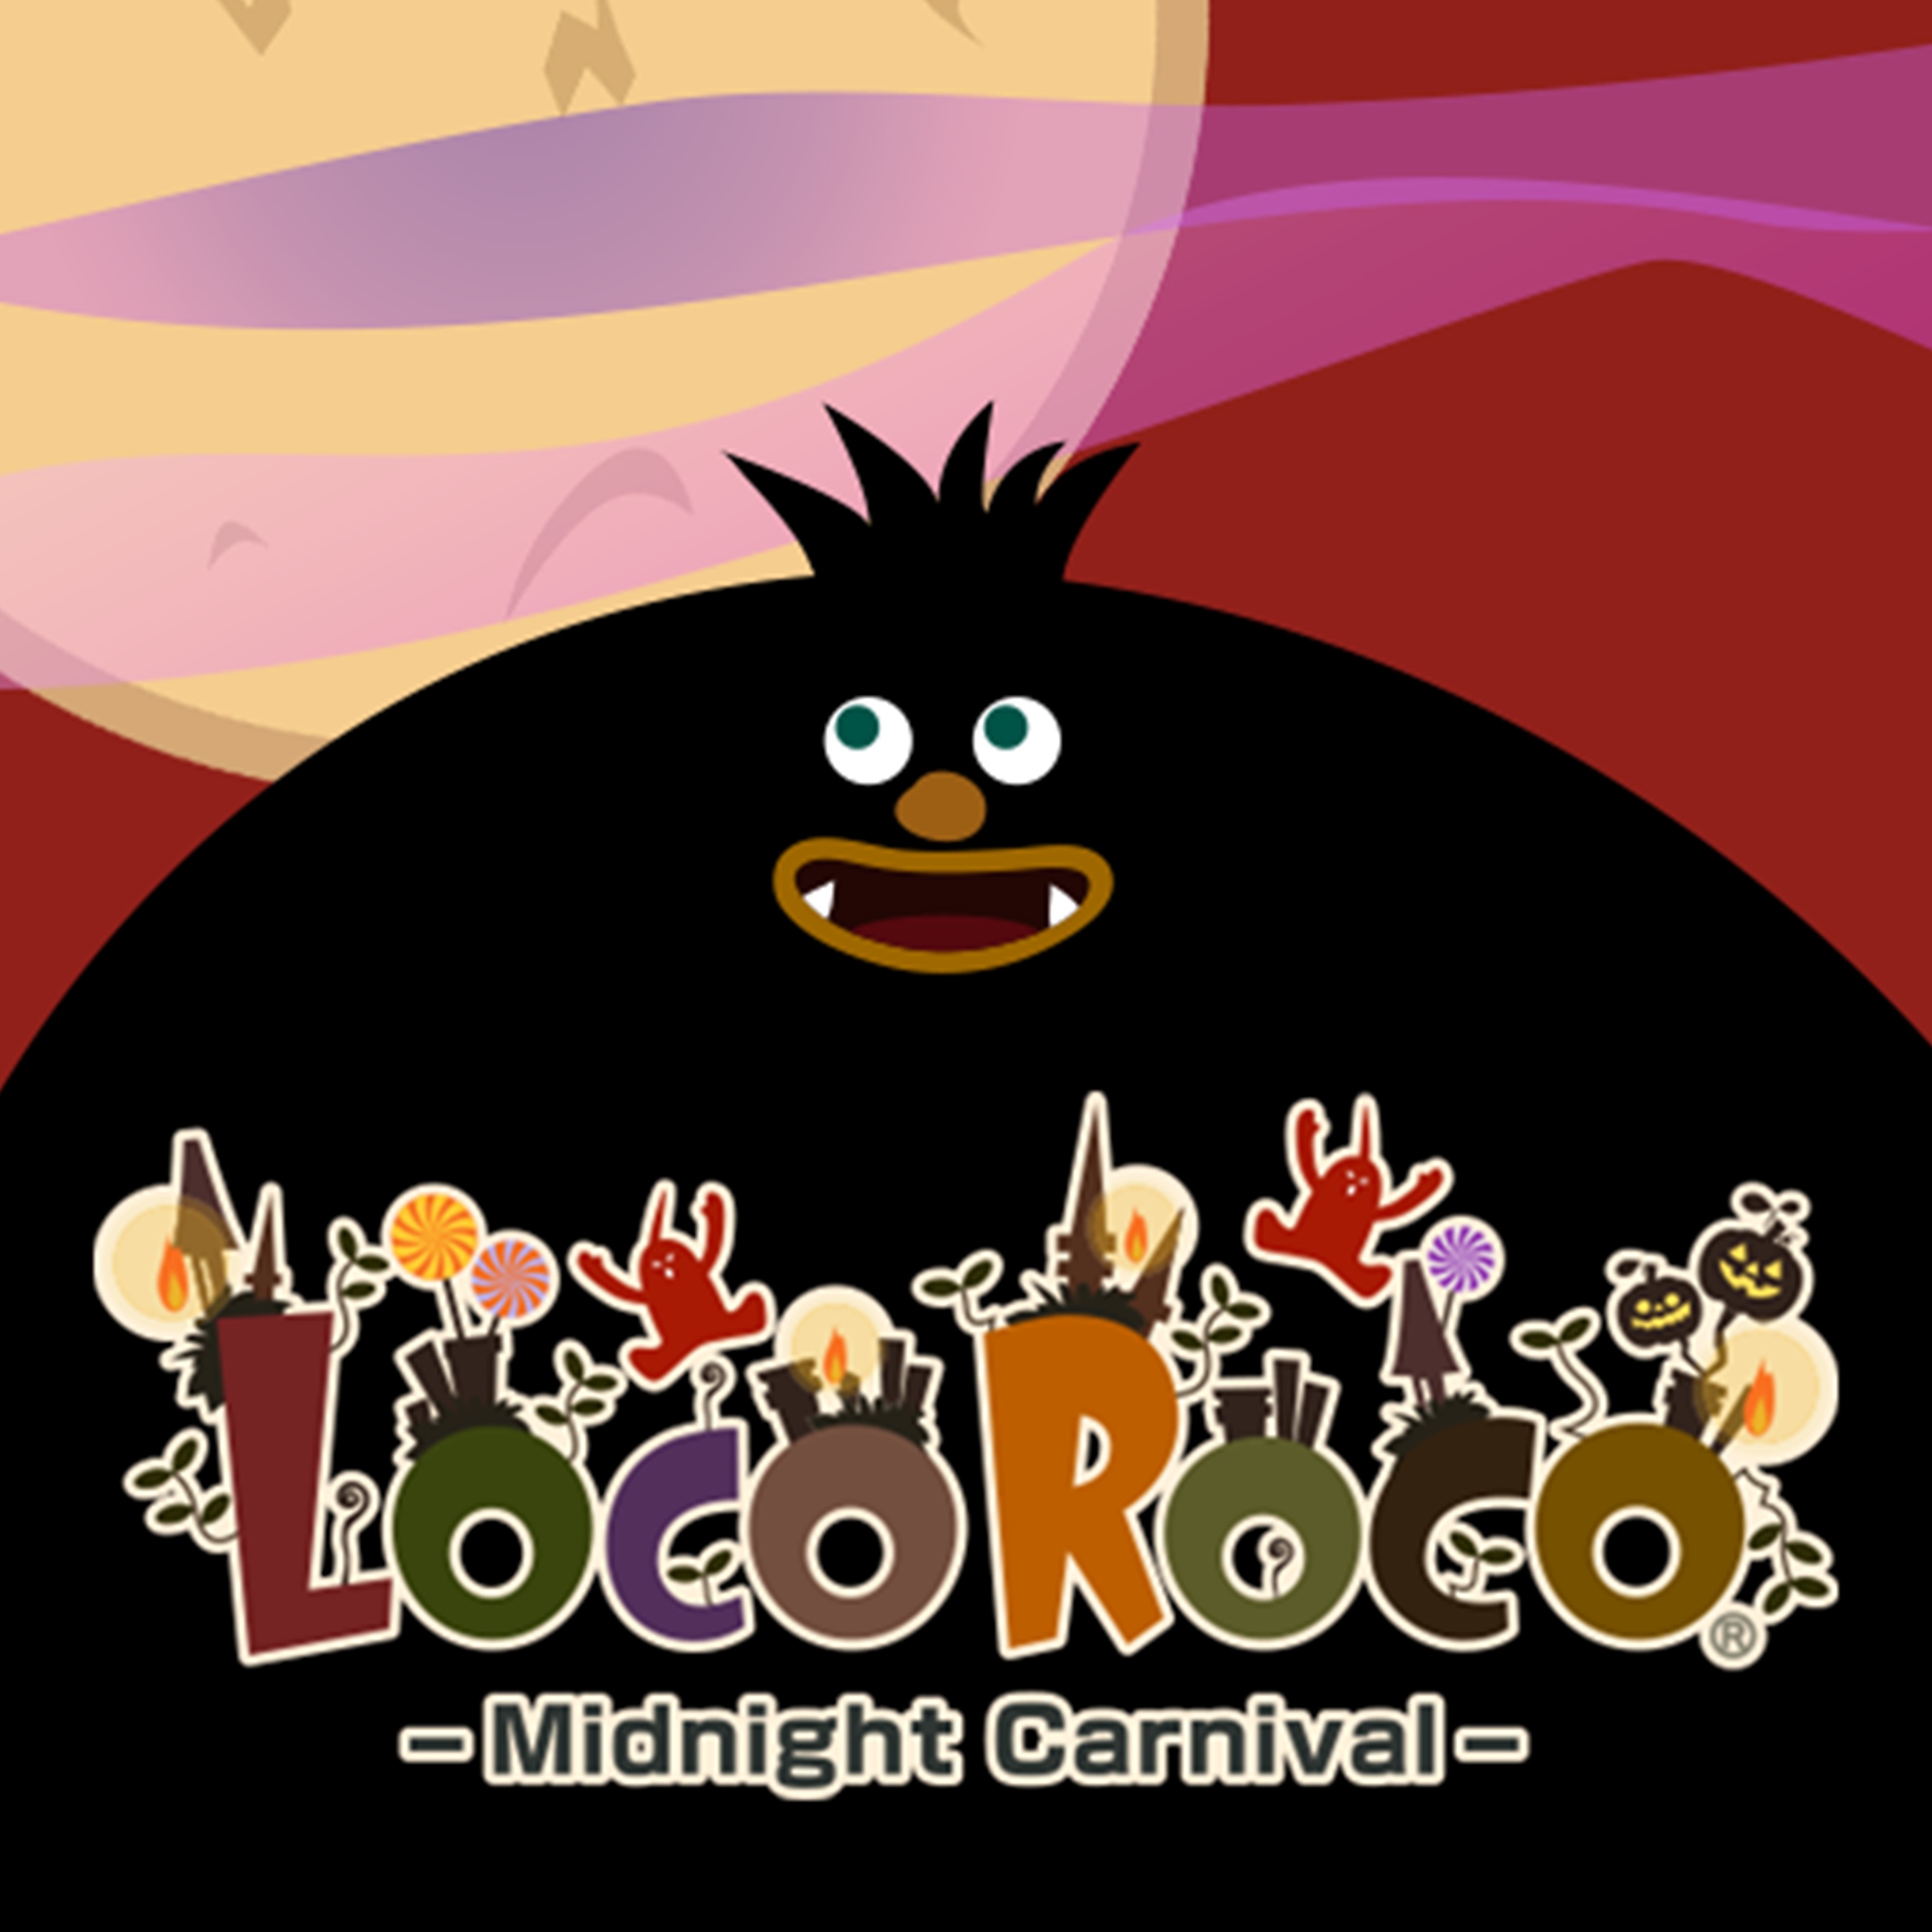 LocoRoco Midnight – grafika jarmarczna z dużą, czarną kreskówkową postacią